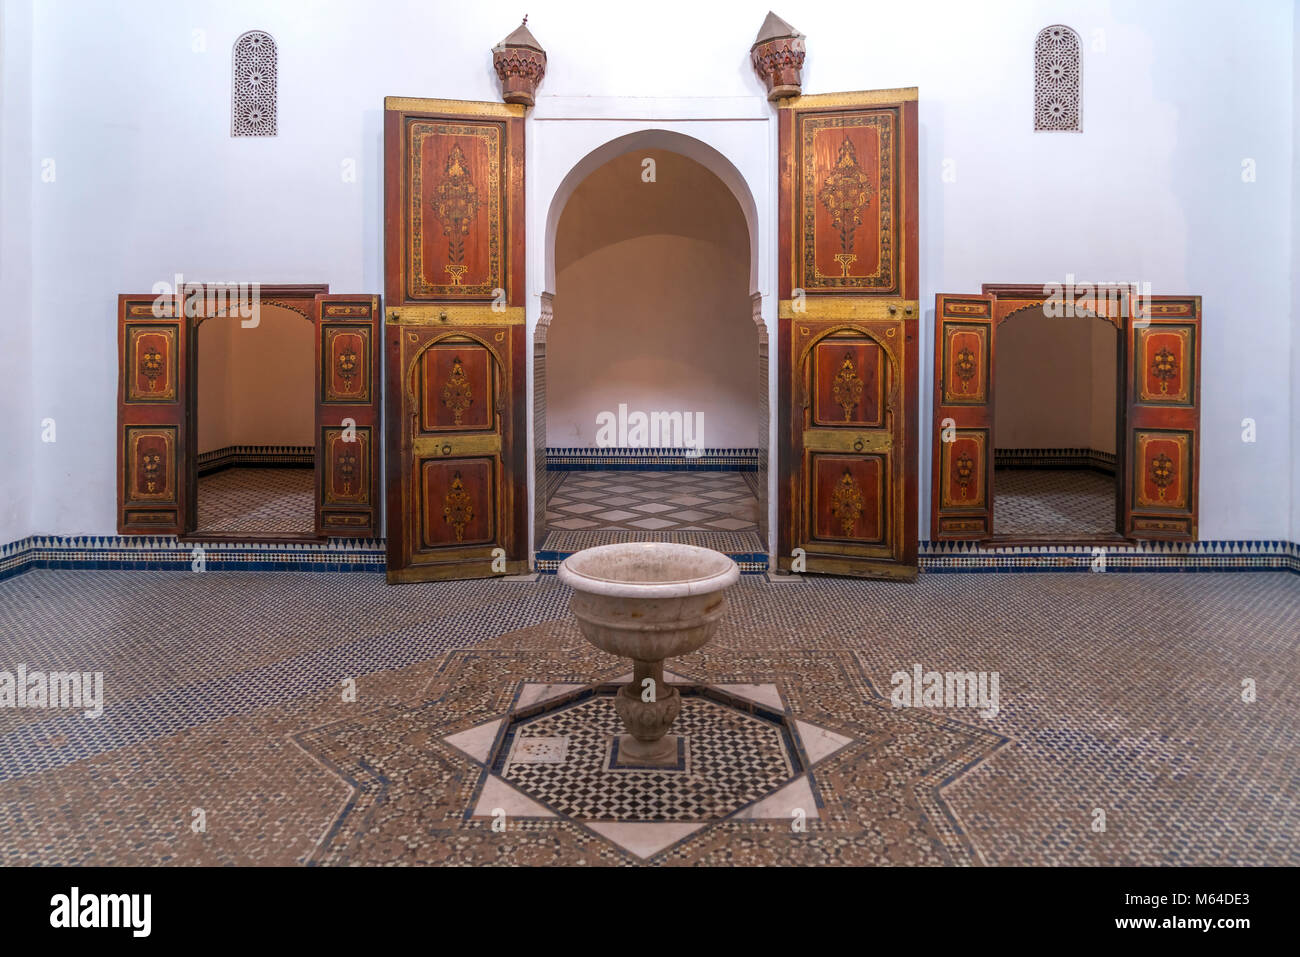 Innenraum im Palast von Bahia, Marrakech, Königreich Marokko, Afrika | Palais Bahia intérieur, Marrakech, Royaume du Maroc, l'Afrique Banque D'Images